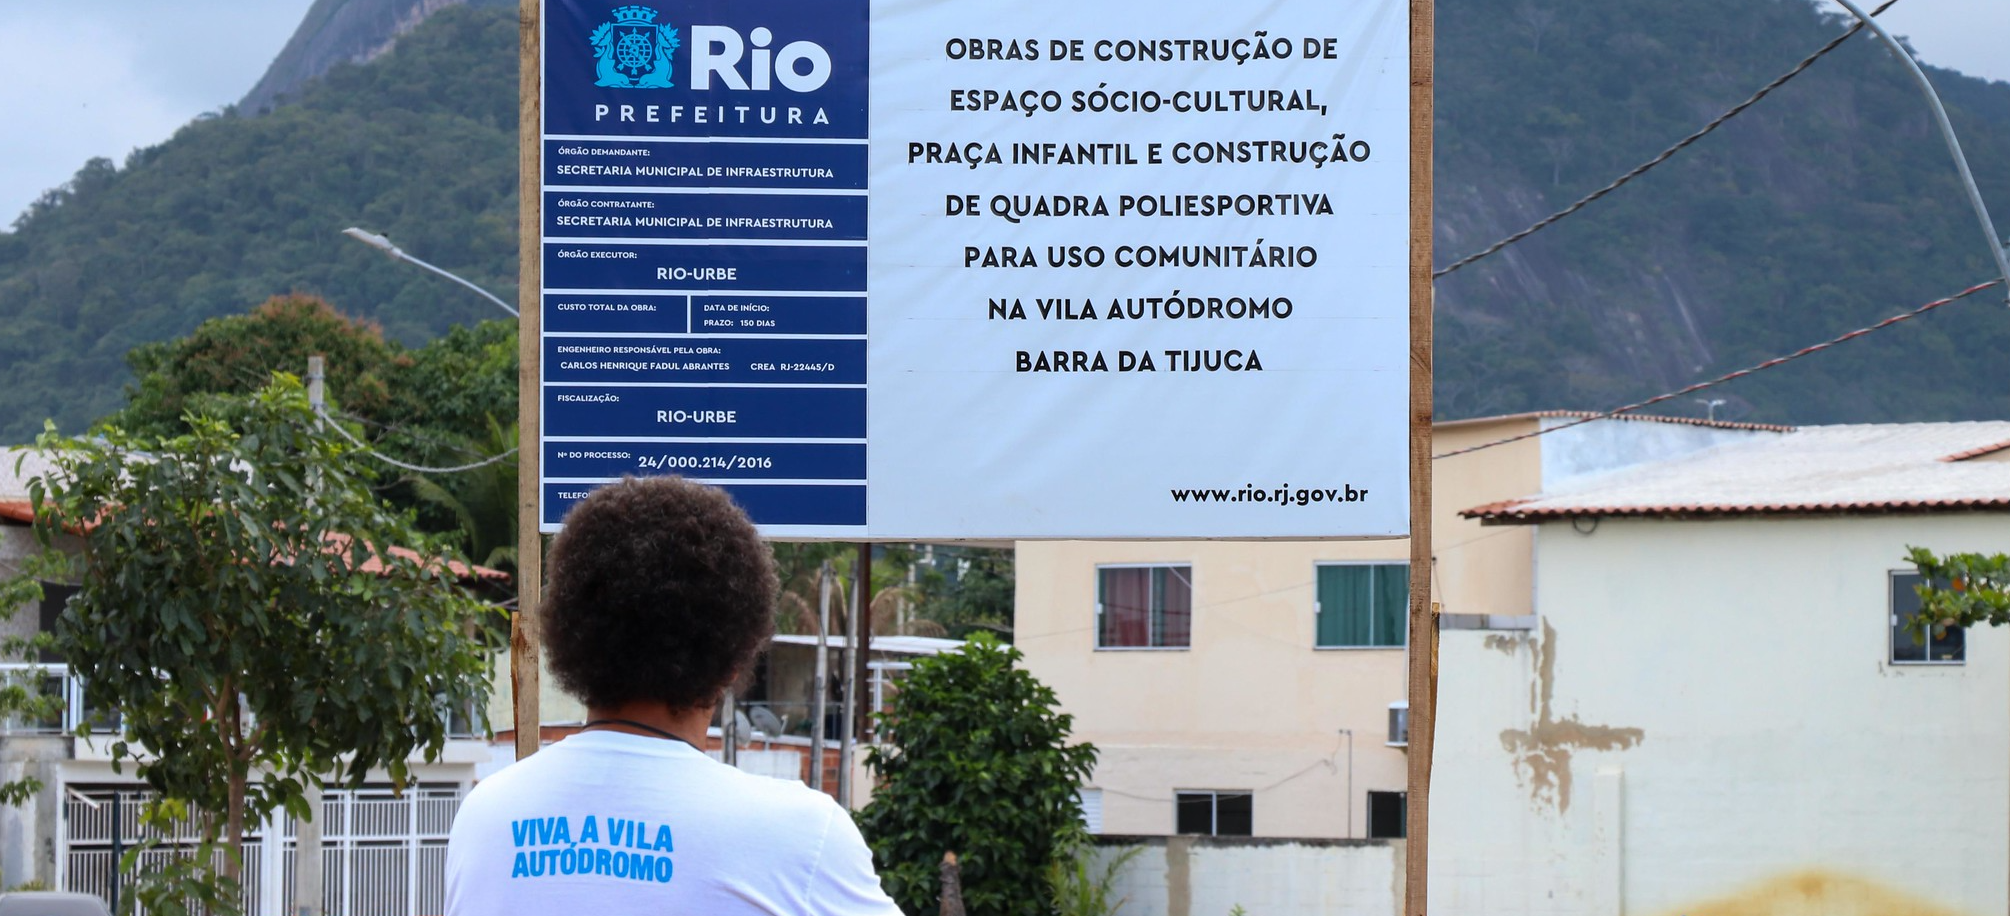 Luiz Cláudio Silva, morador e representante do Museu das Remoções, observa a placa de identificação das obras na entrada da comunidade. Foto: Alexandre Cerqueira